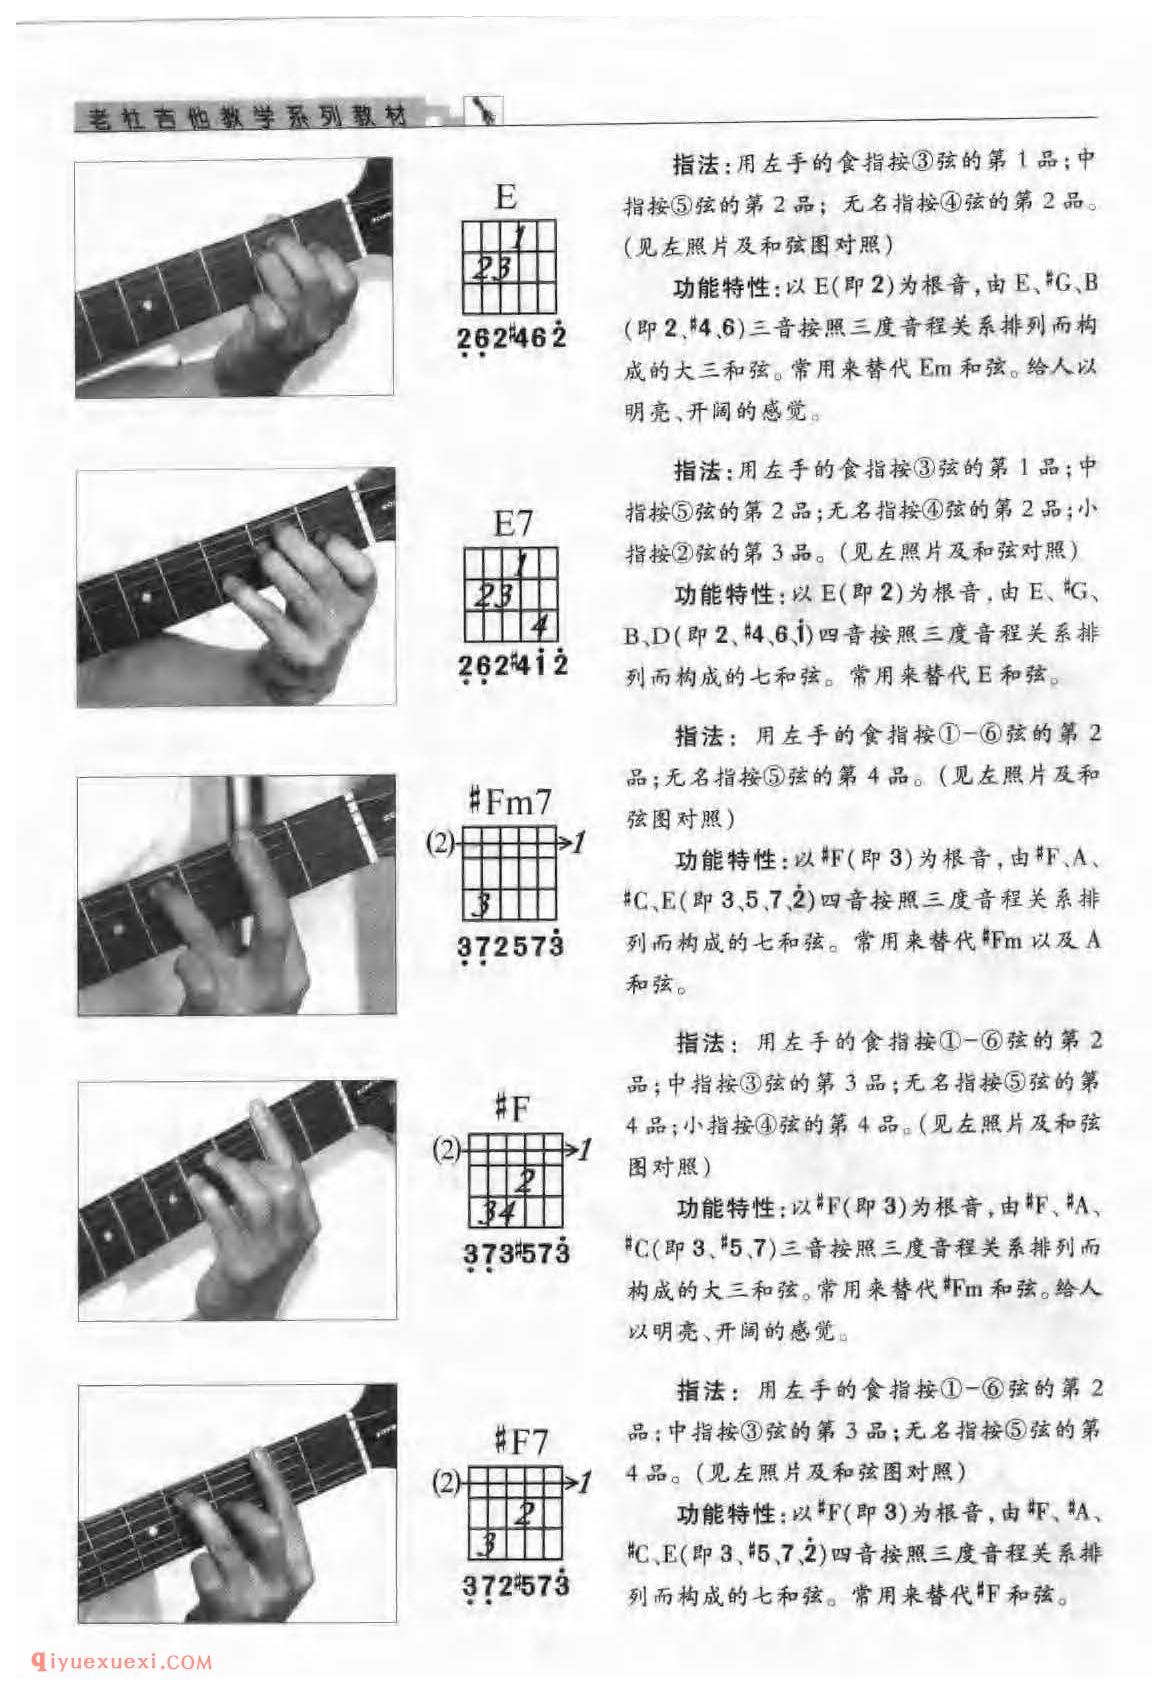 吉他D大调与b小调的的音阶及指板音位图_D大调与b小调的和弦指法与练习